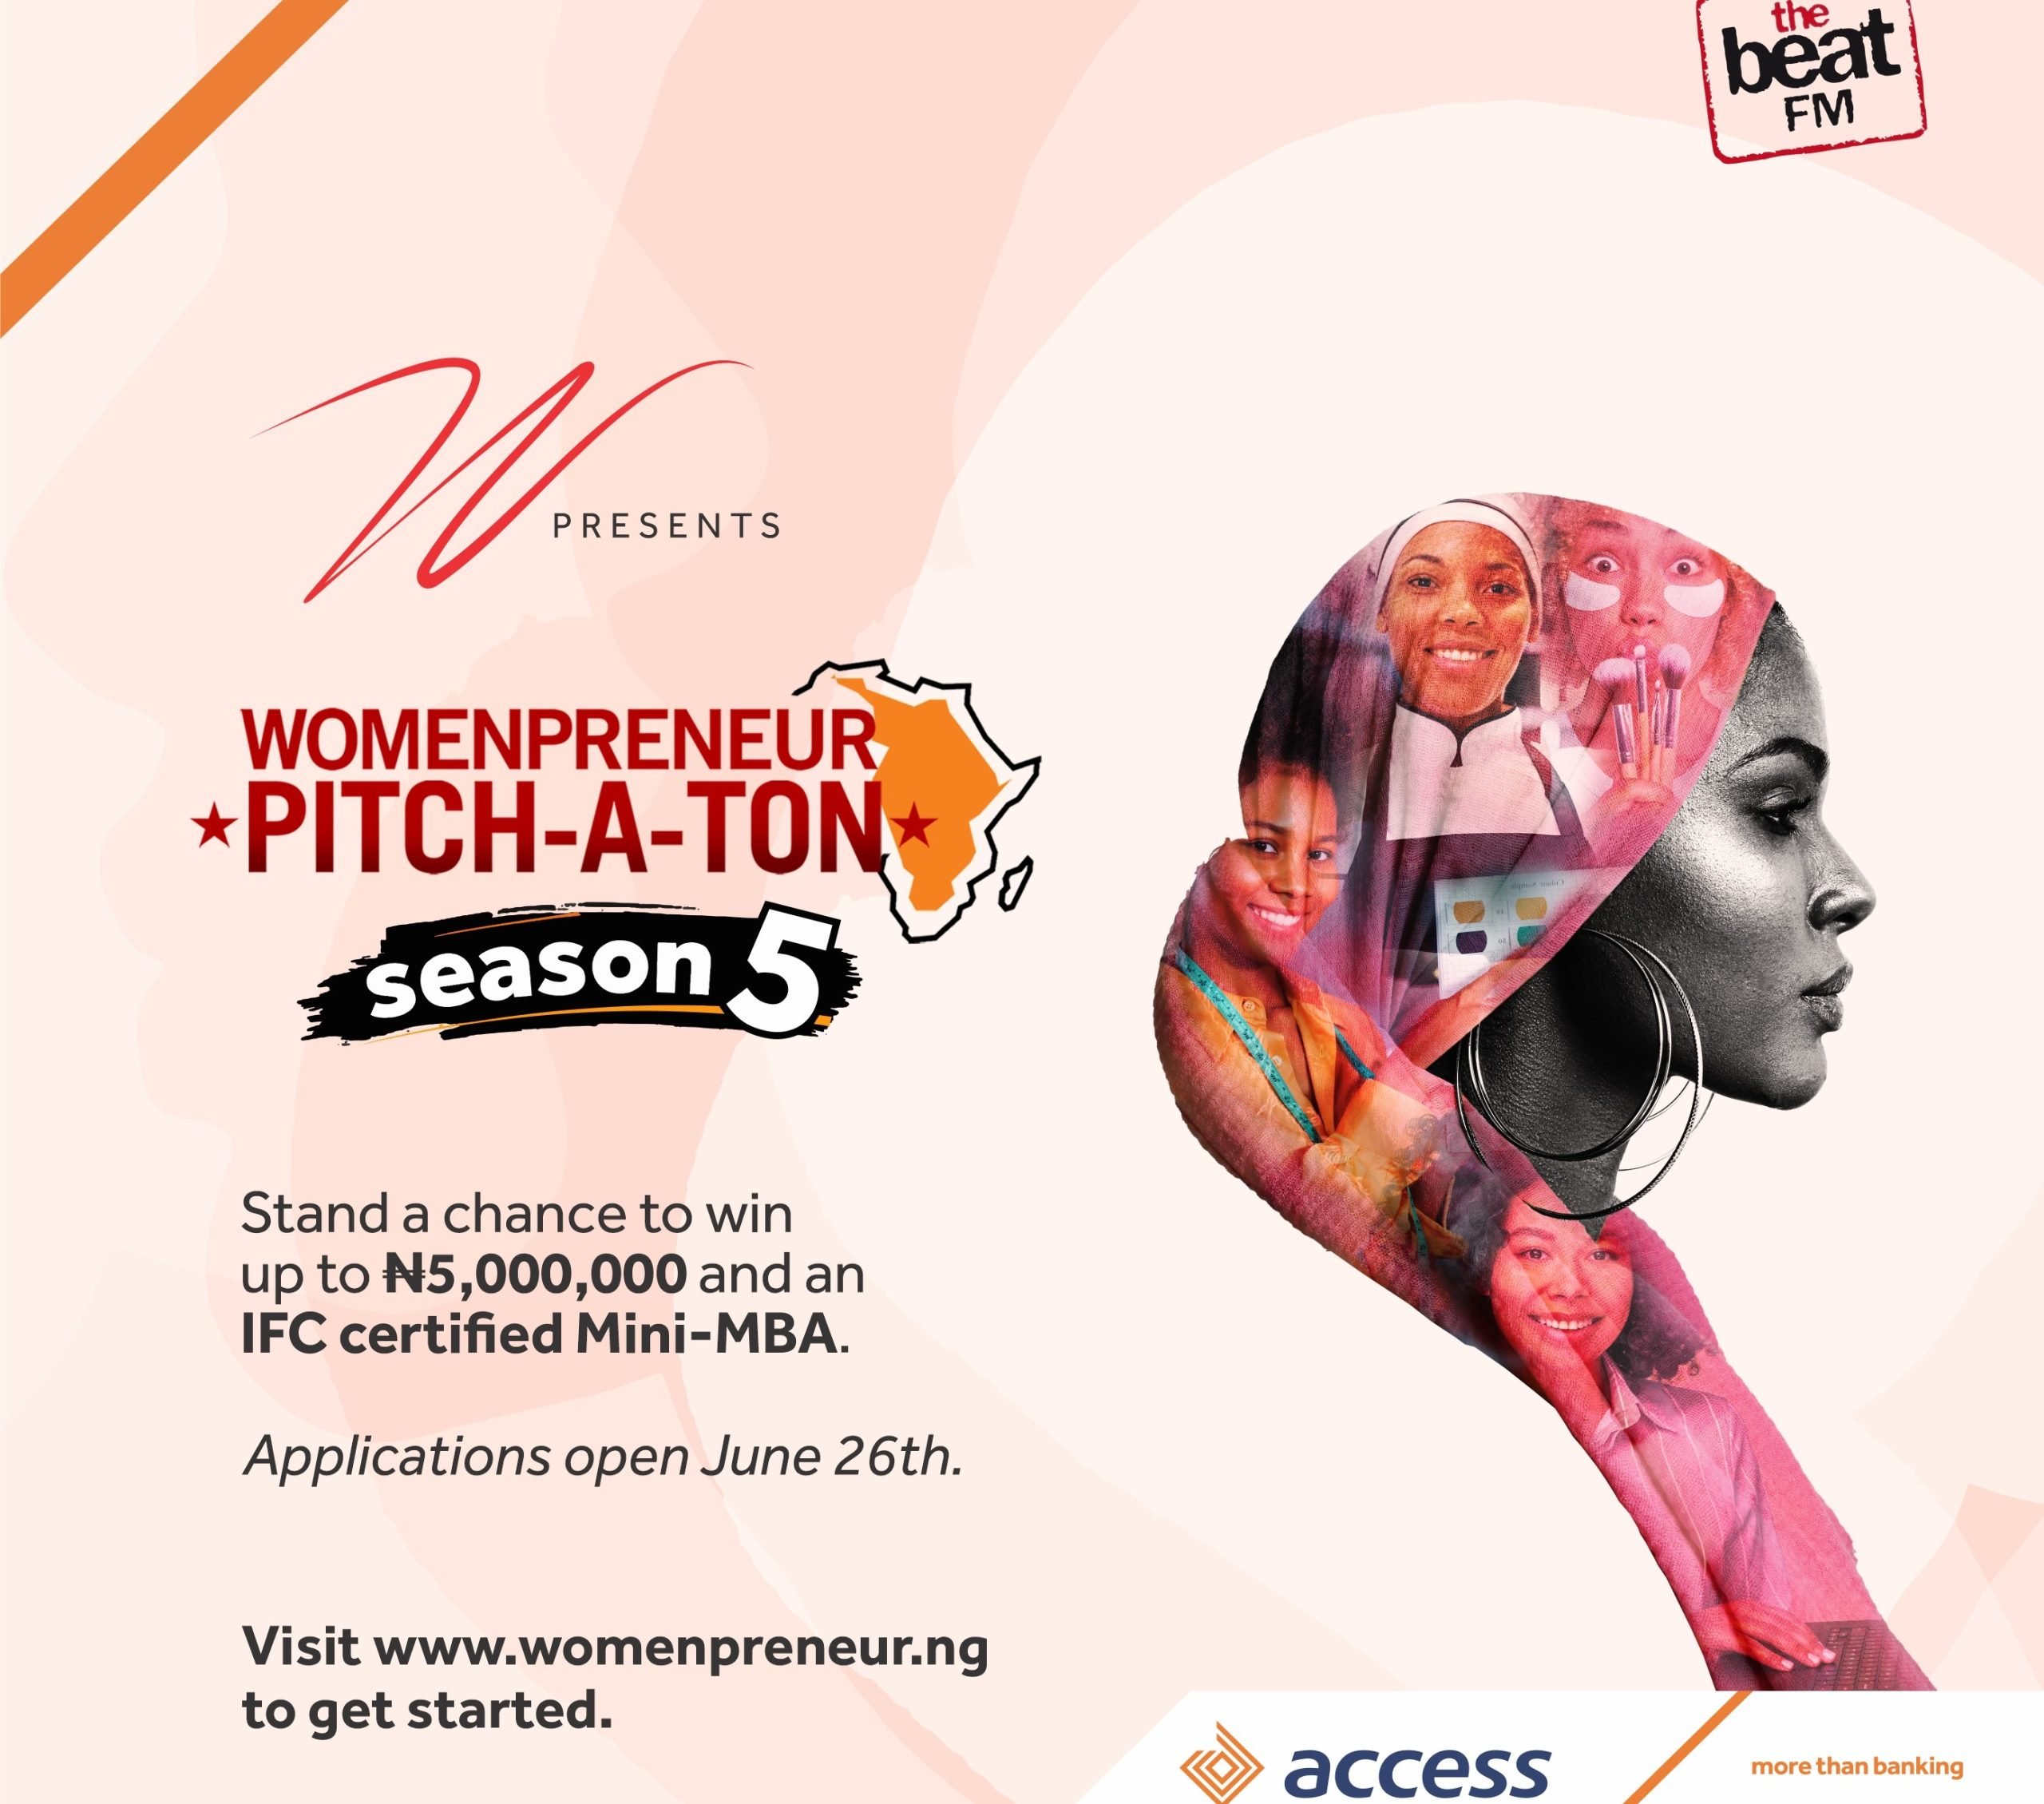 Access Bank Launches Womenpreneur Pitch-a-ton Season